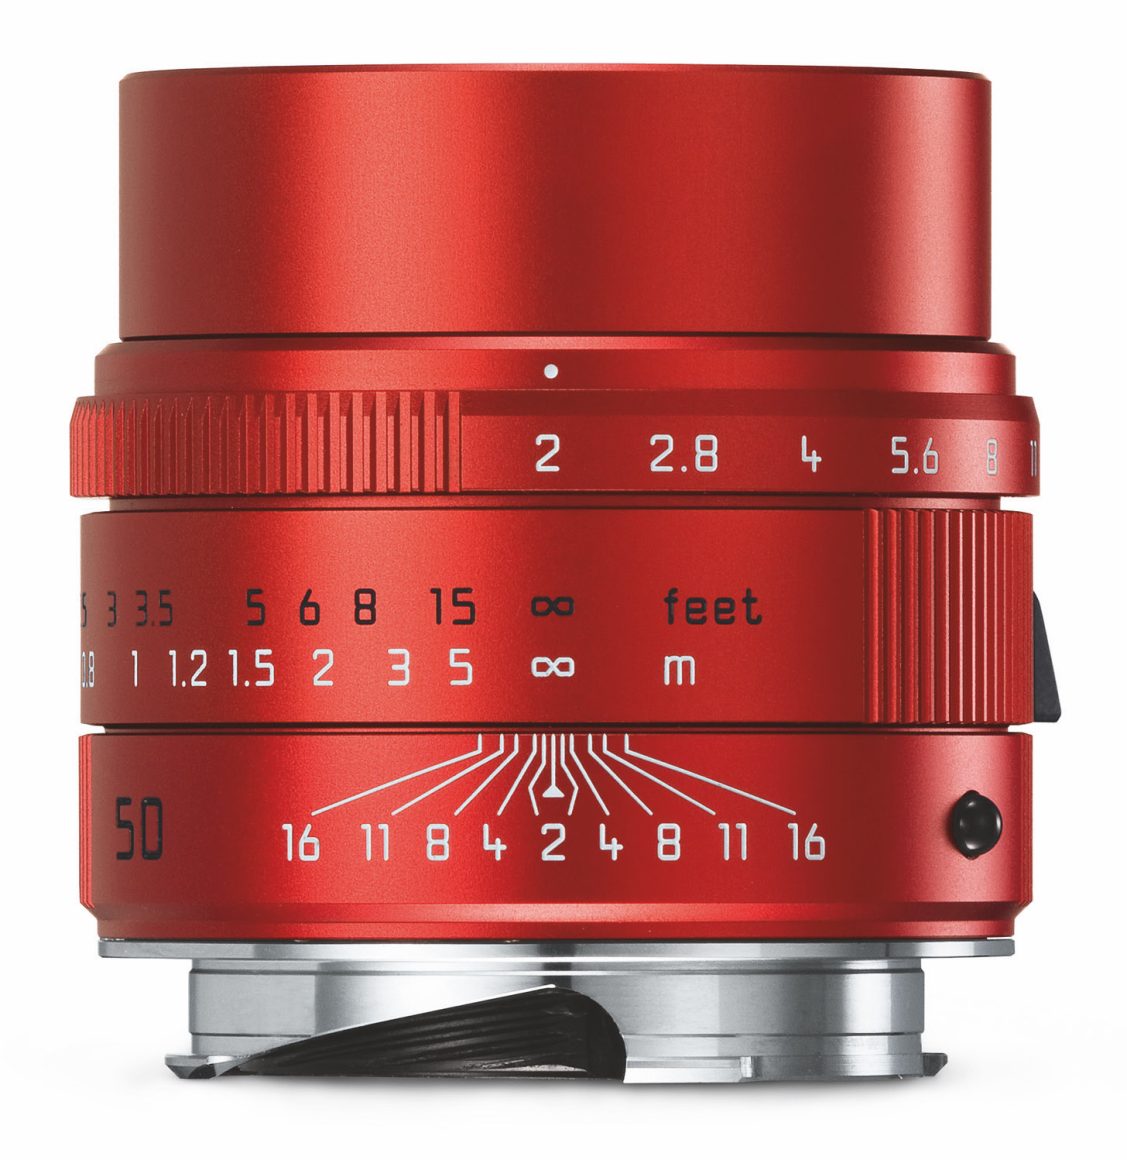 Leica APO-SUMMICRON-M 50mm F/2 ASPH. Red